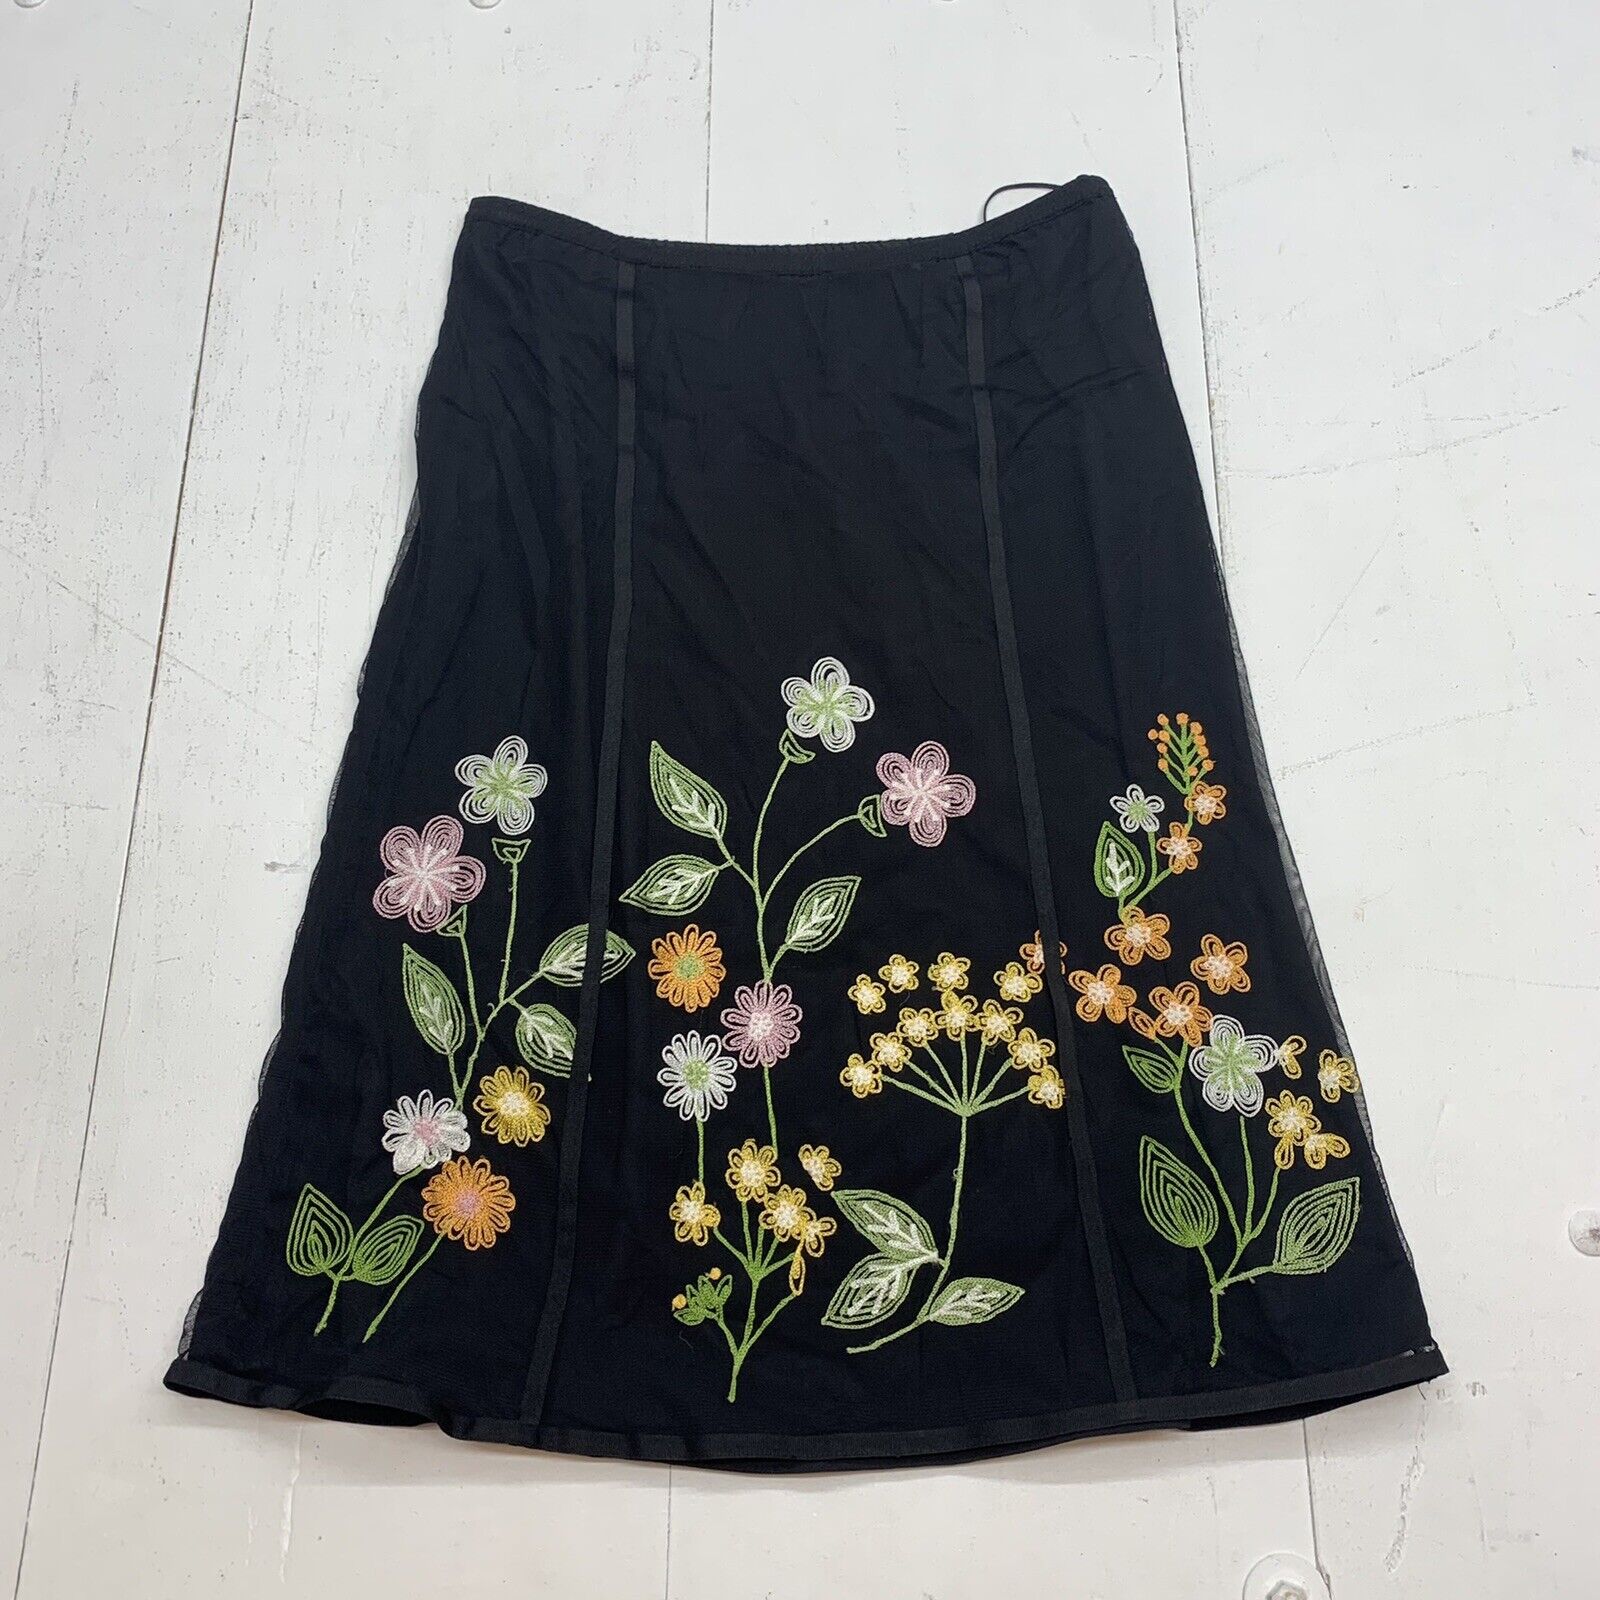 Sigrid Olsen Womens Black Floral Skirt Size 6